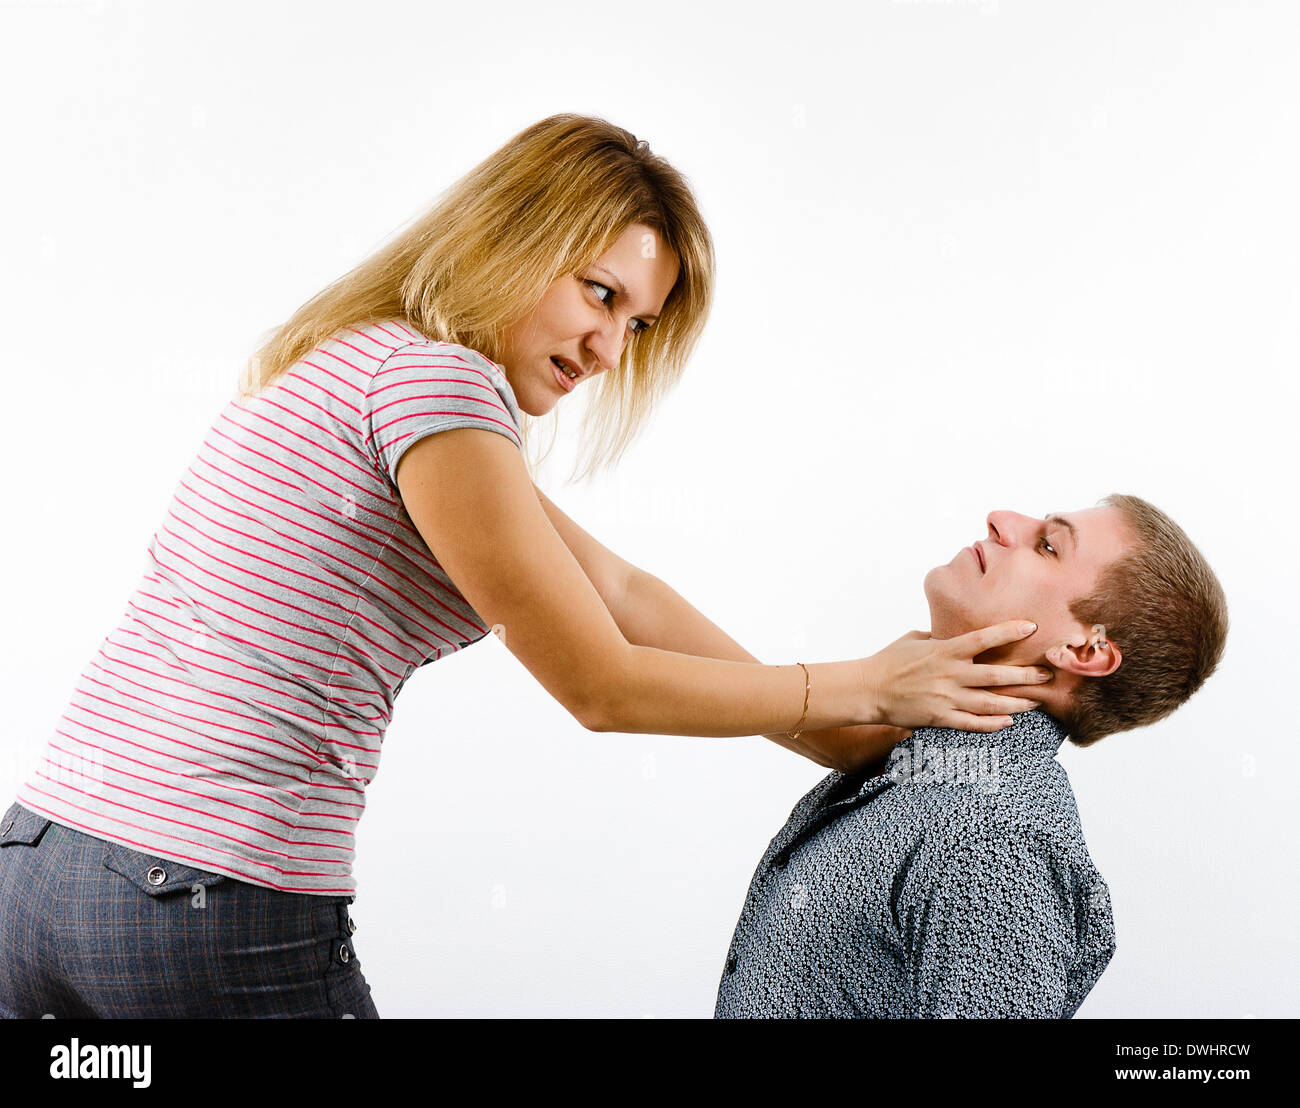 Women abusing men